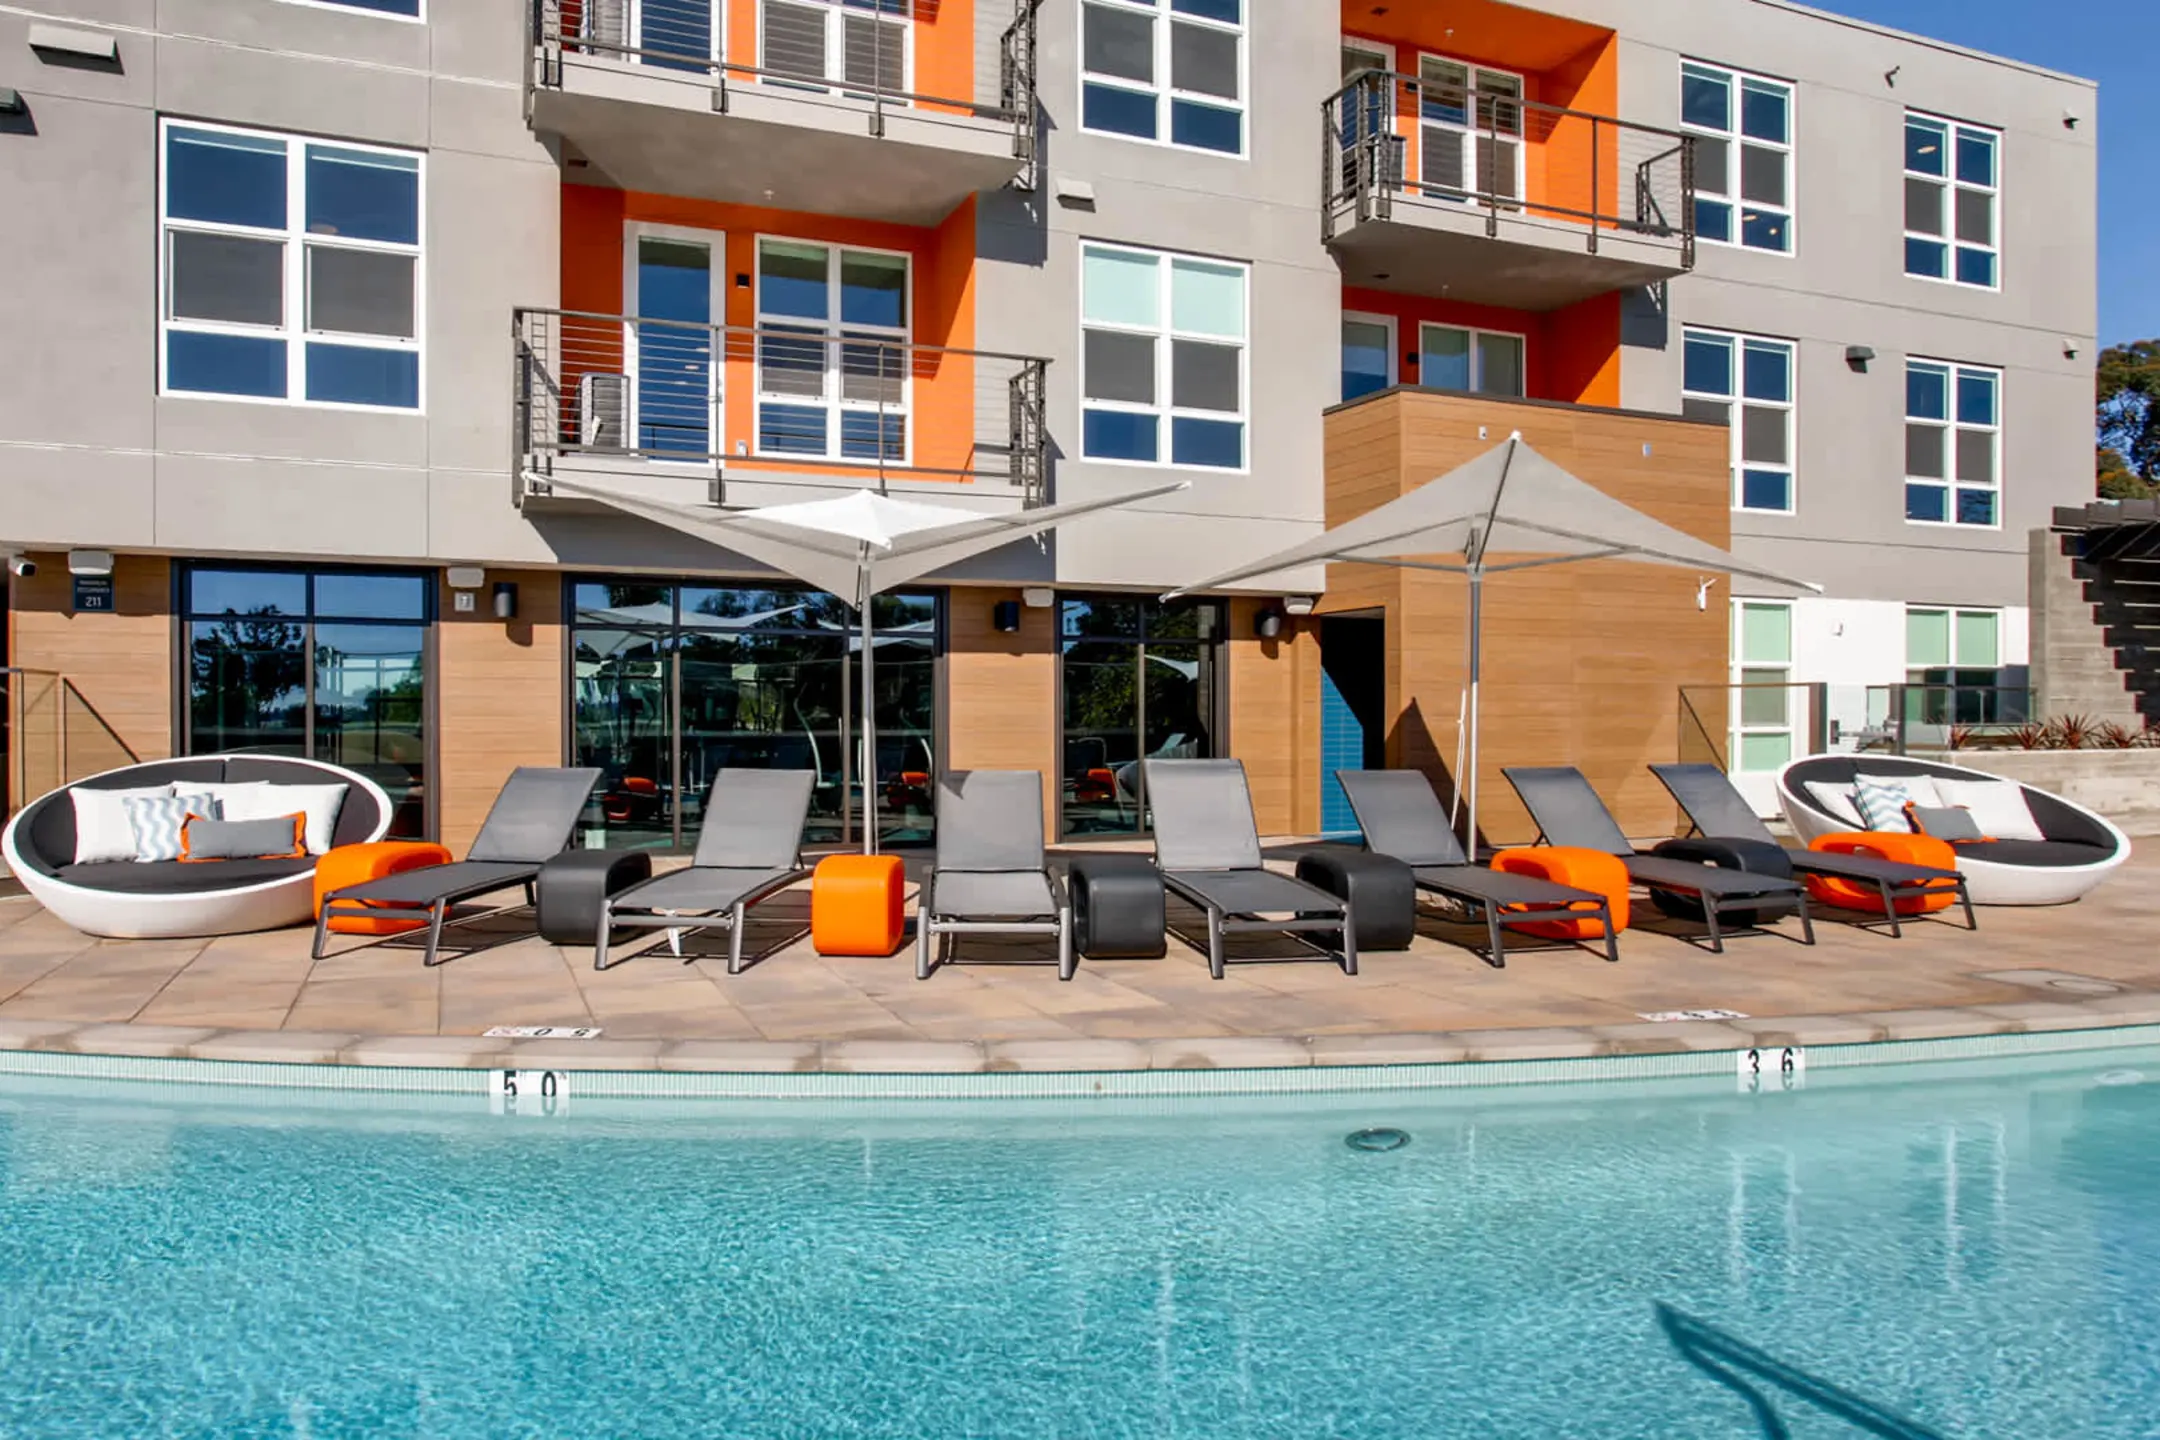 Pool - Mara Pacific Beach Apartments - San Diego, CA